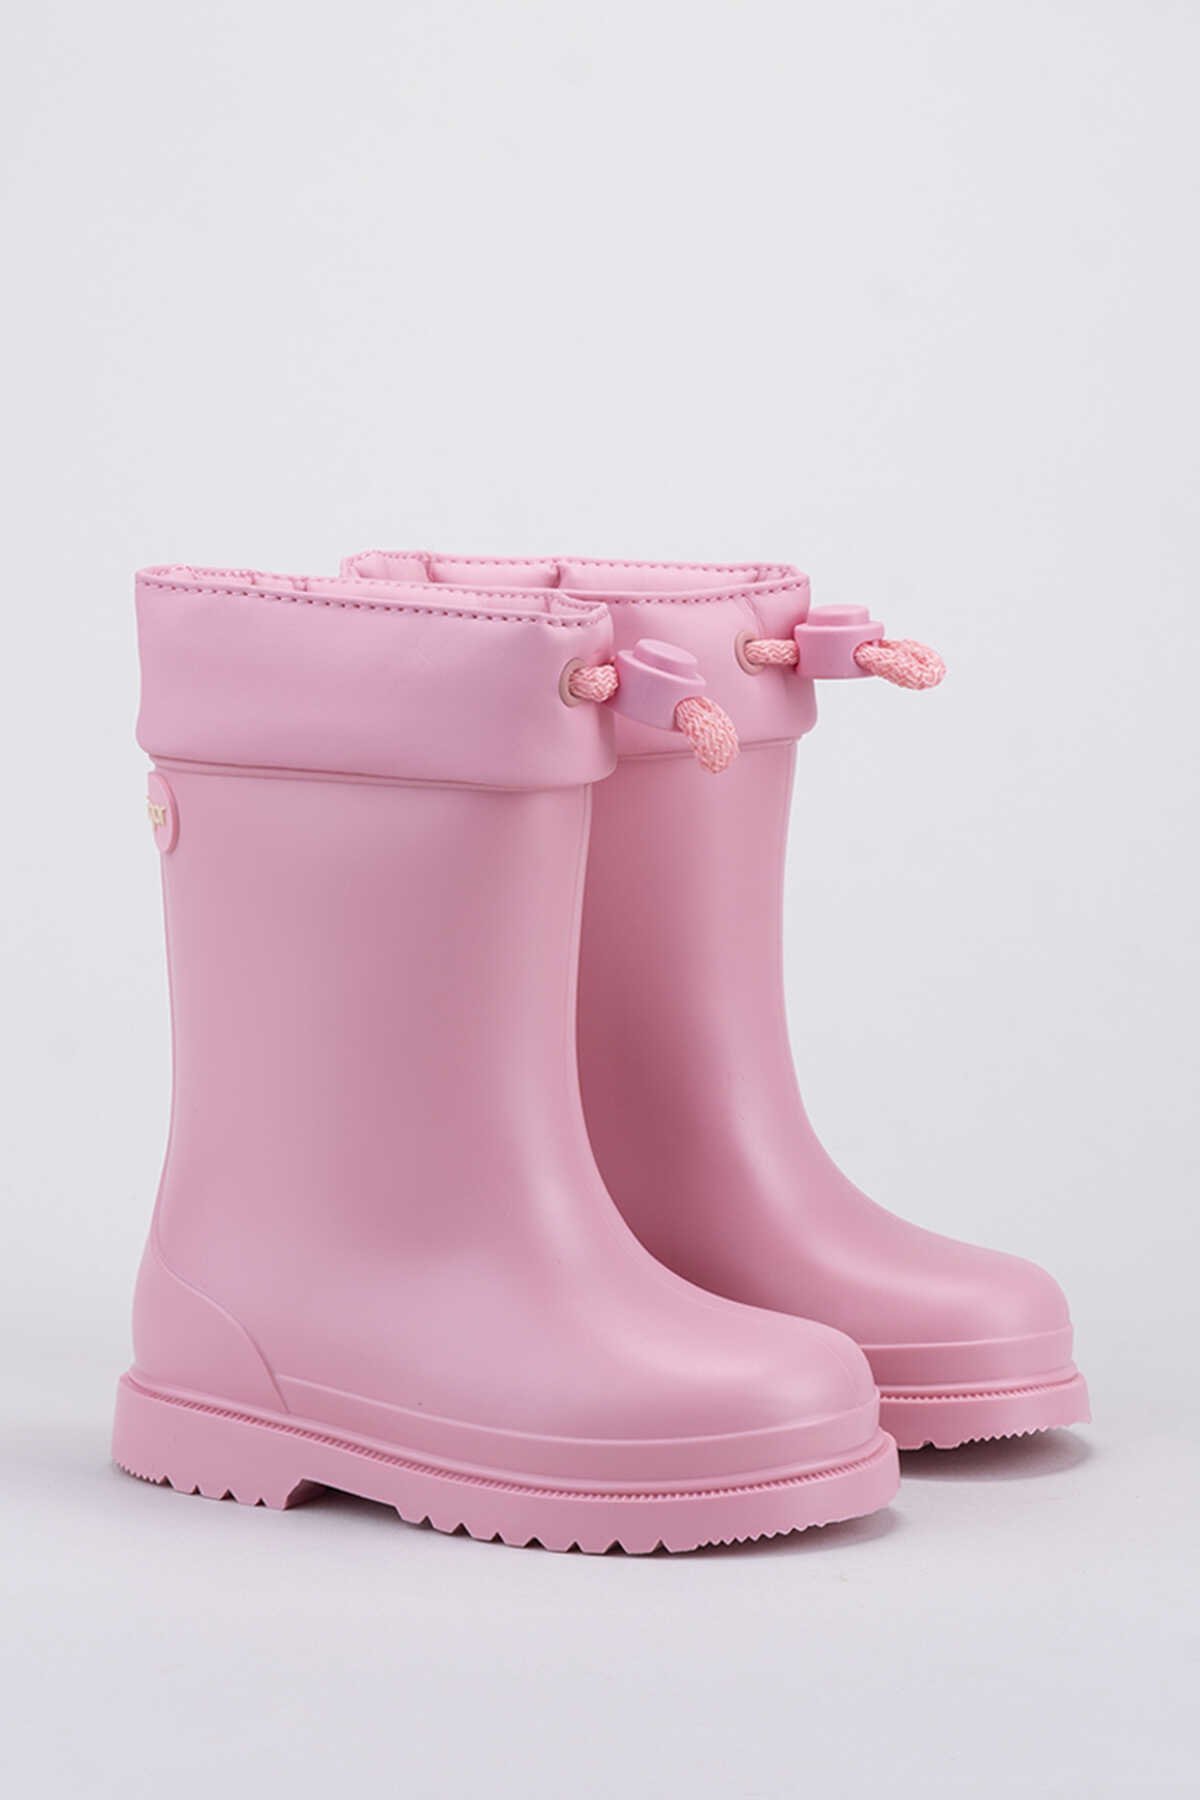 Igor - Igor CHUFO CUELLO Yağmur Çizmesi Kız Kız Çocuk Ayakkabı Açık Pembe